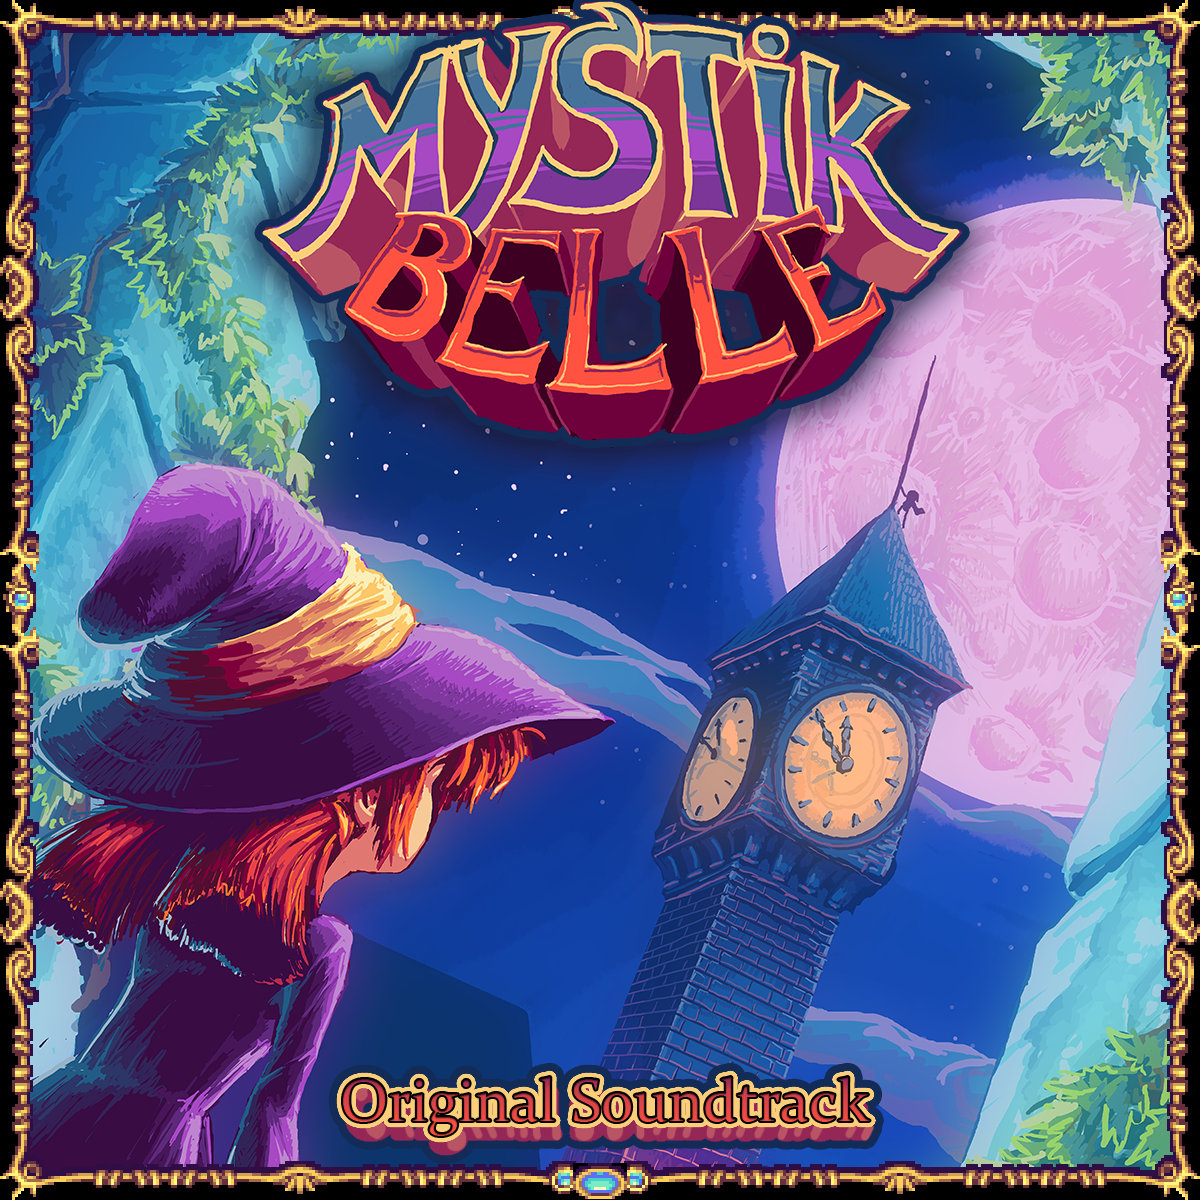 Mystik Belle Backgrounds on Wallpapers Vista